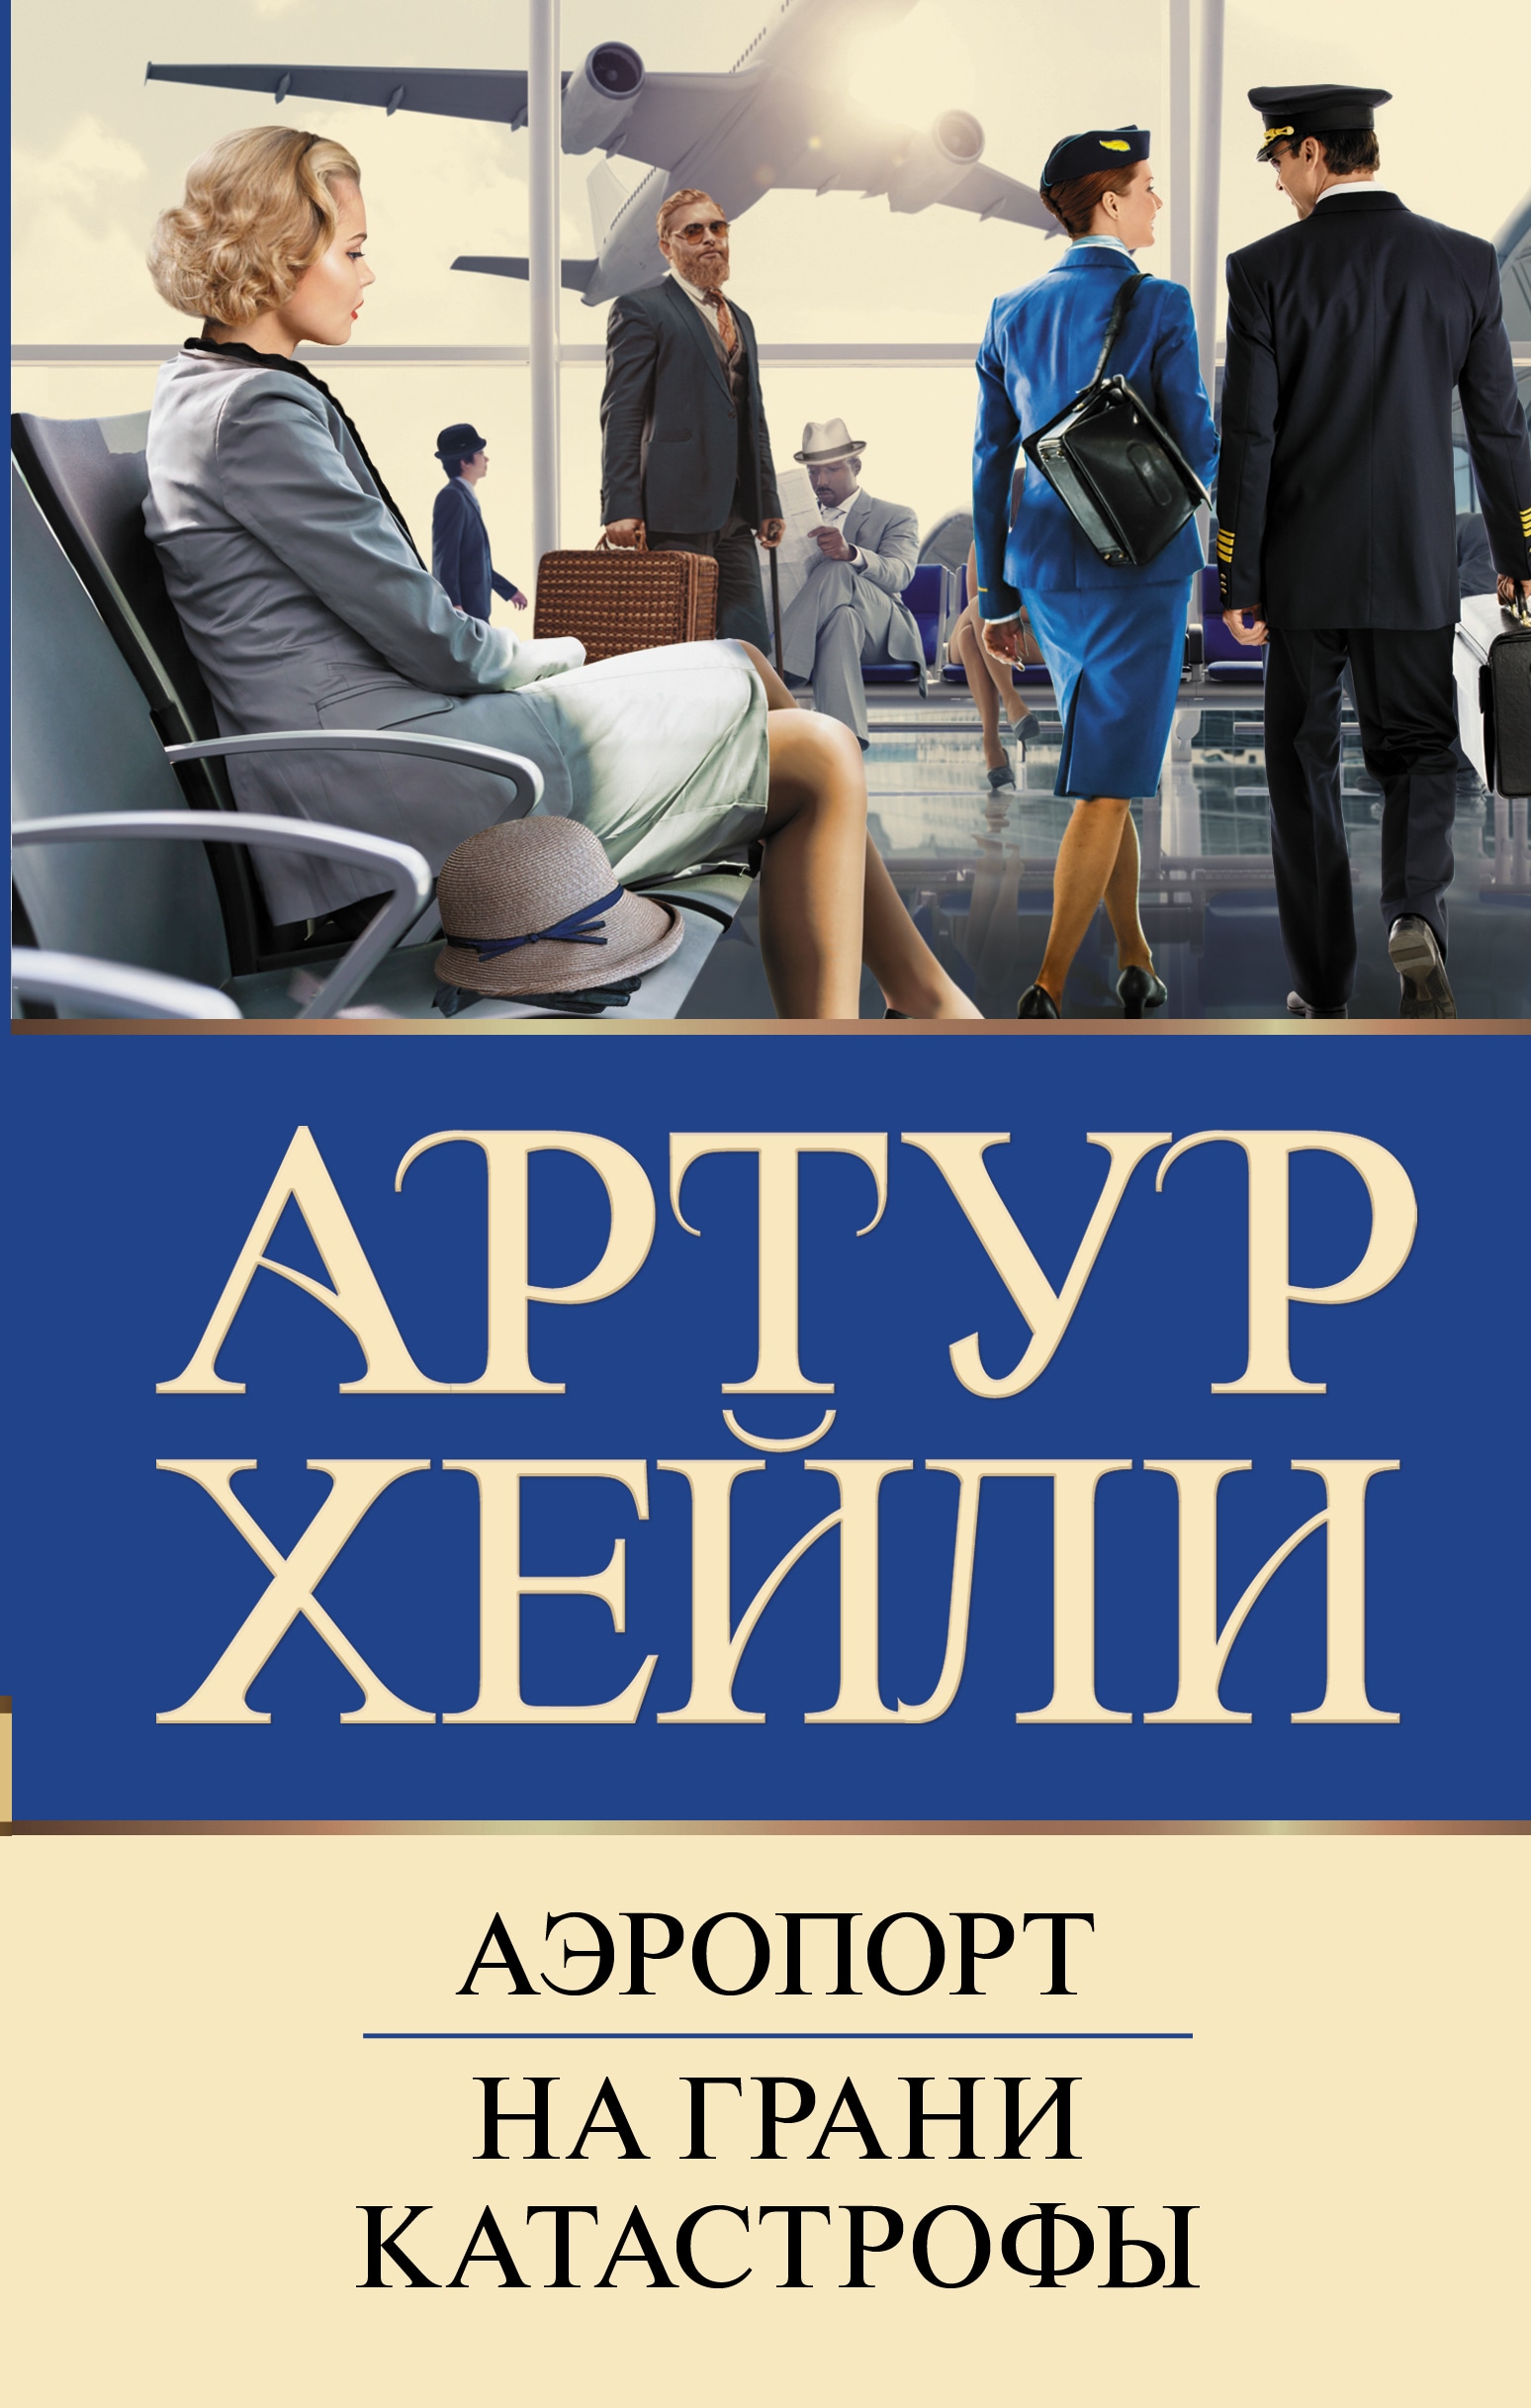 Книга «Аэропорт. На грани катастрофы» Артур Хейли — 2022 г.